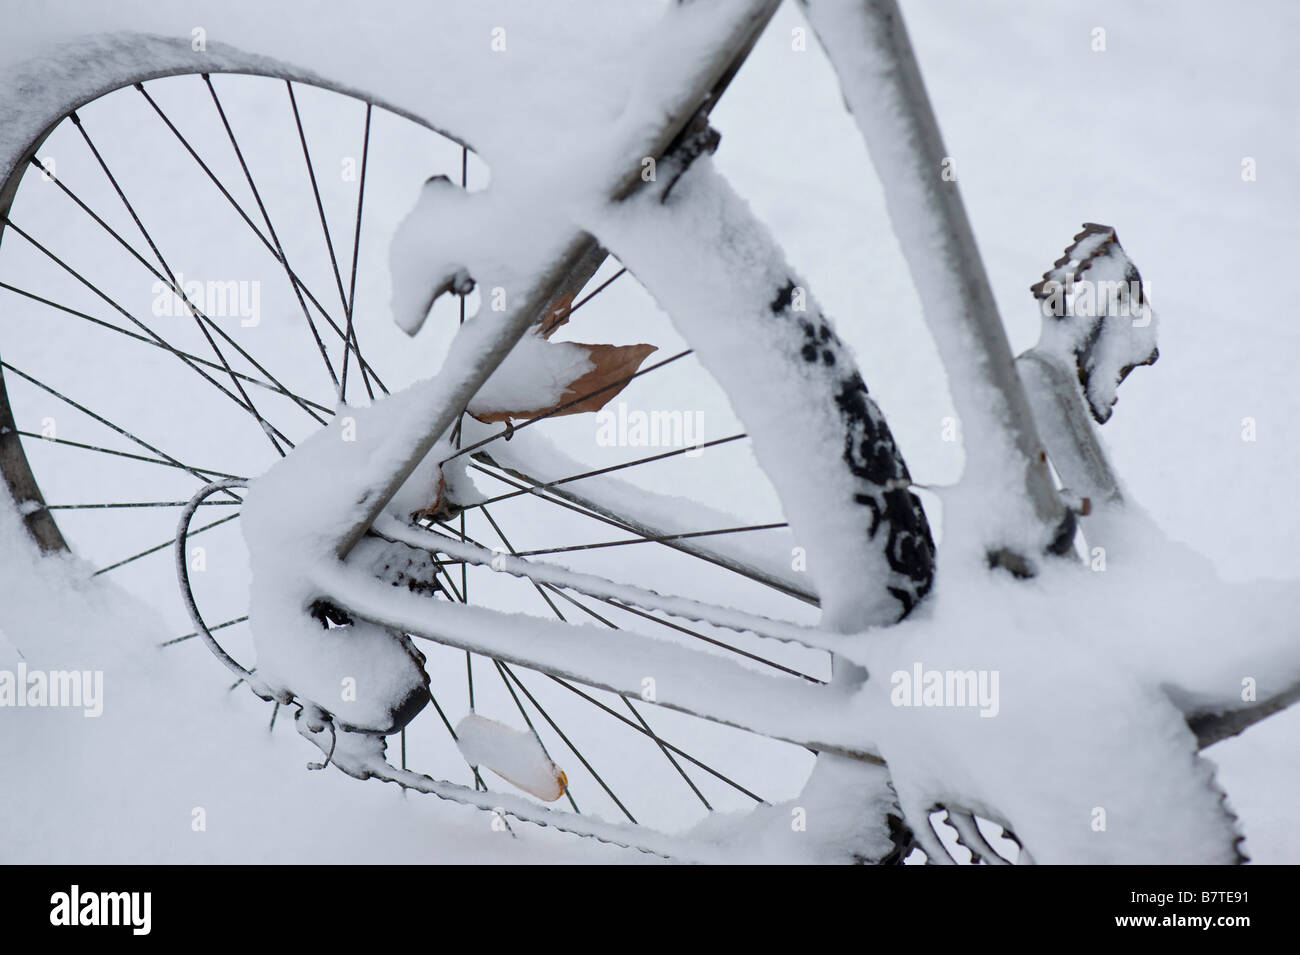 Fahrrad Februar mit Schnee bedeckt Stockfoto